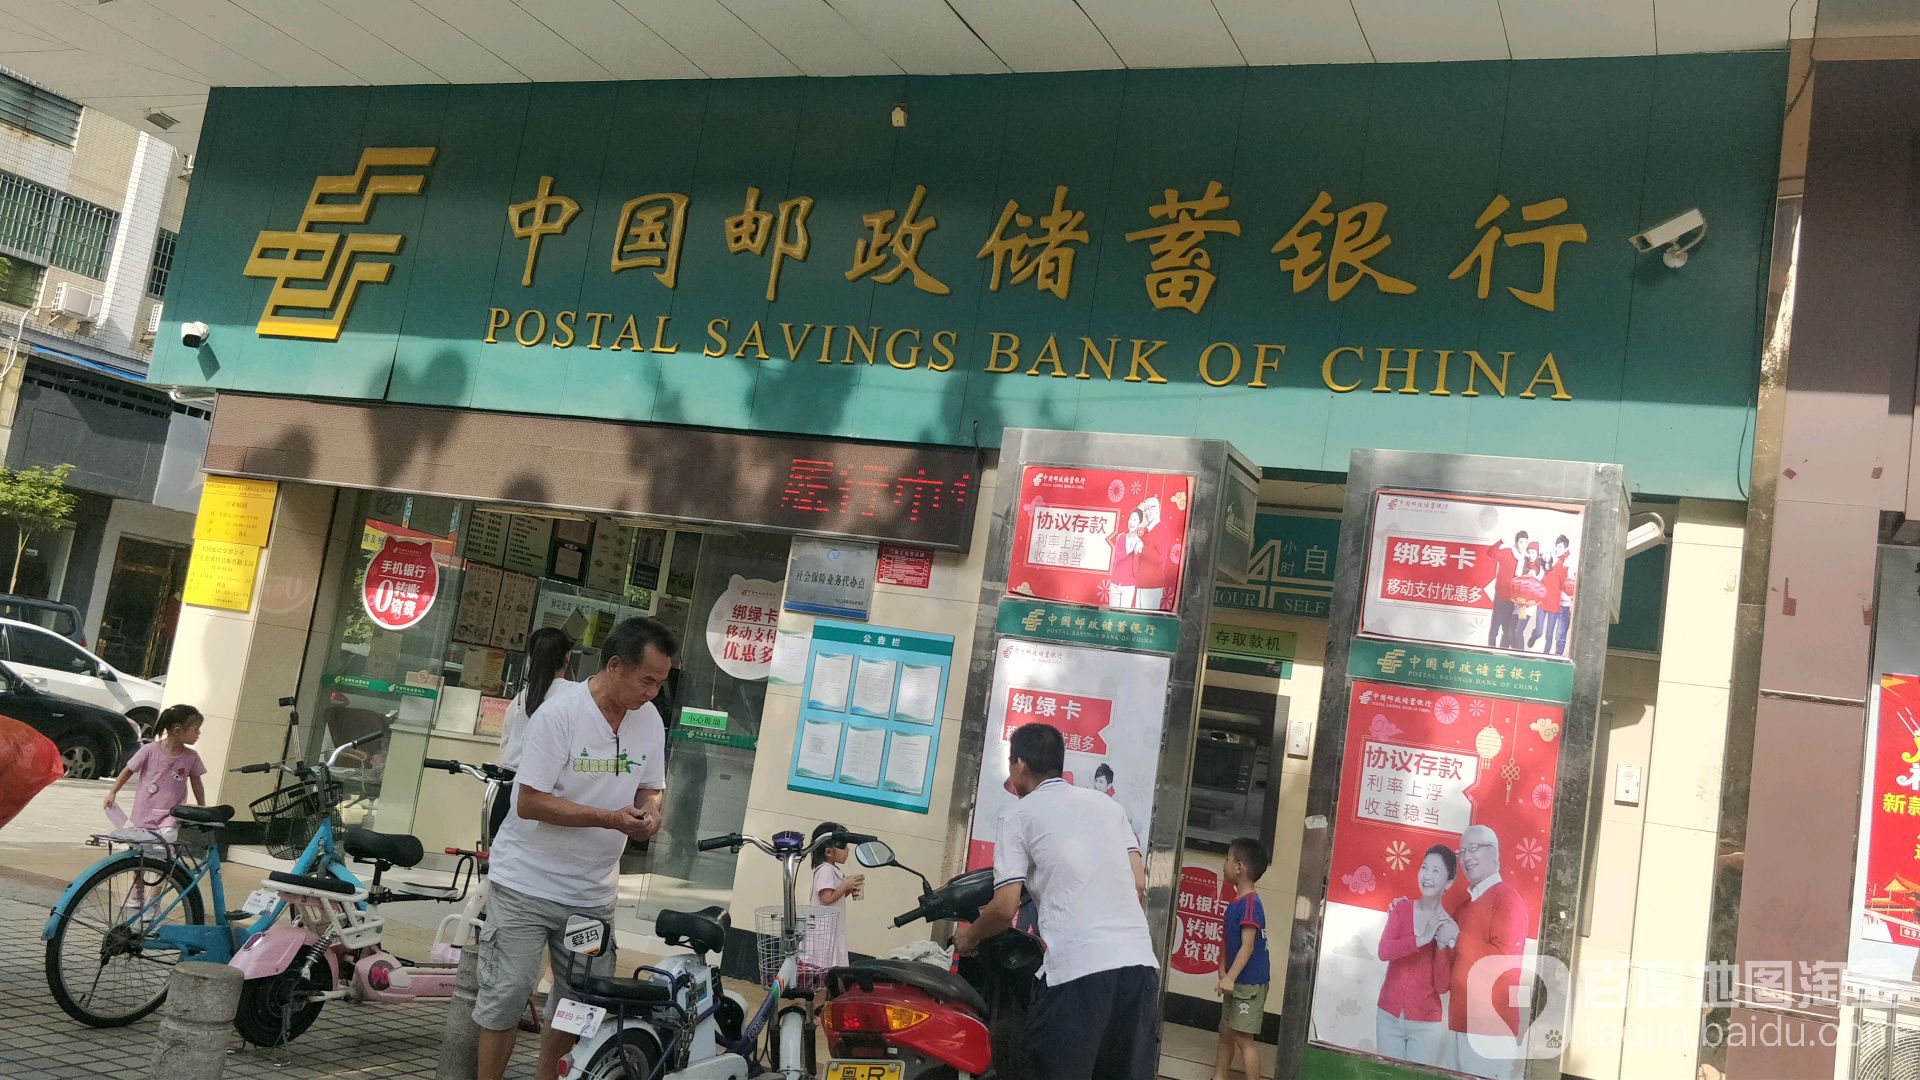 中國郵政儲蓄銀行ATM(振興路支行)